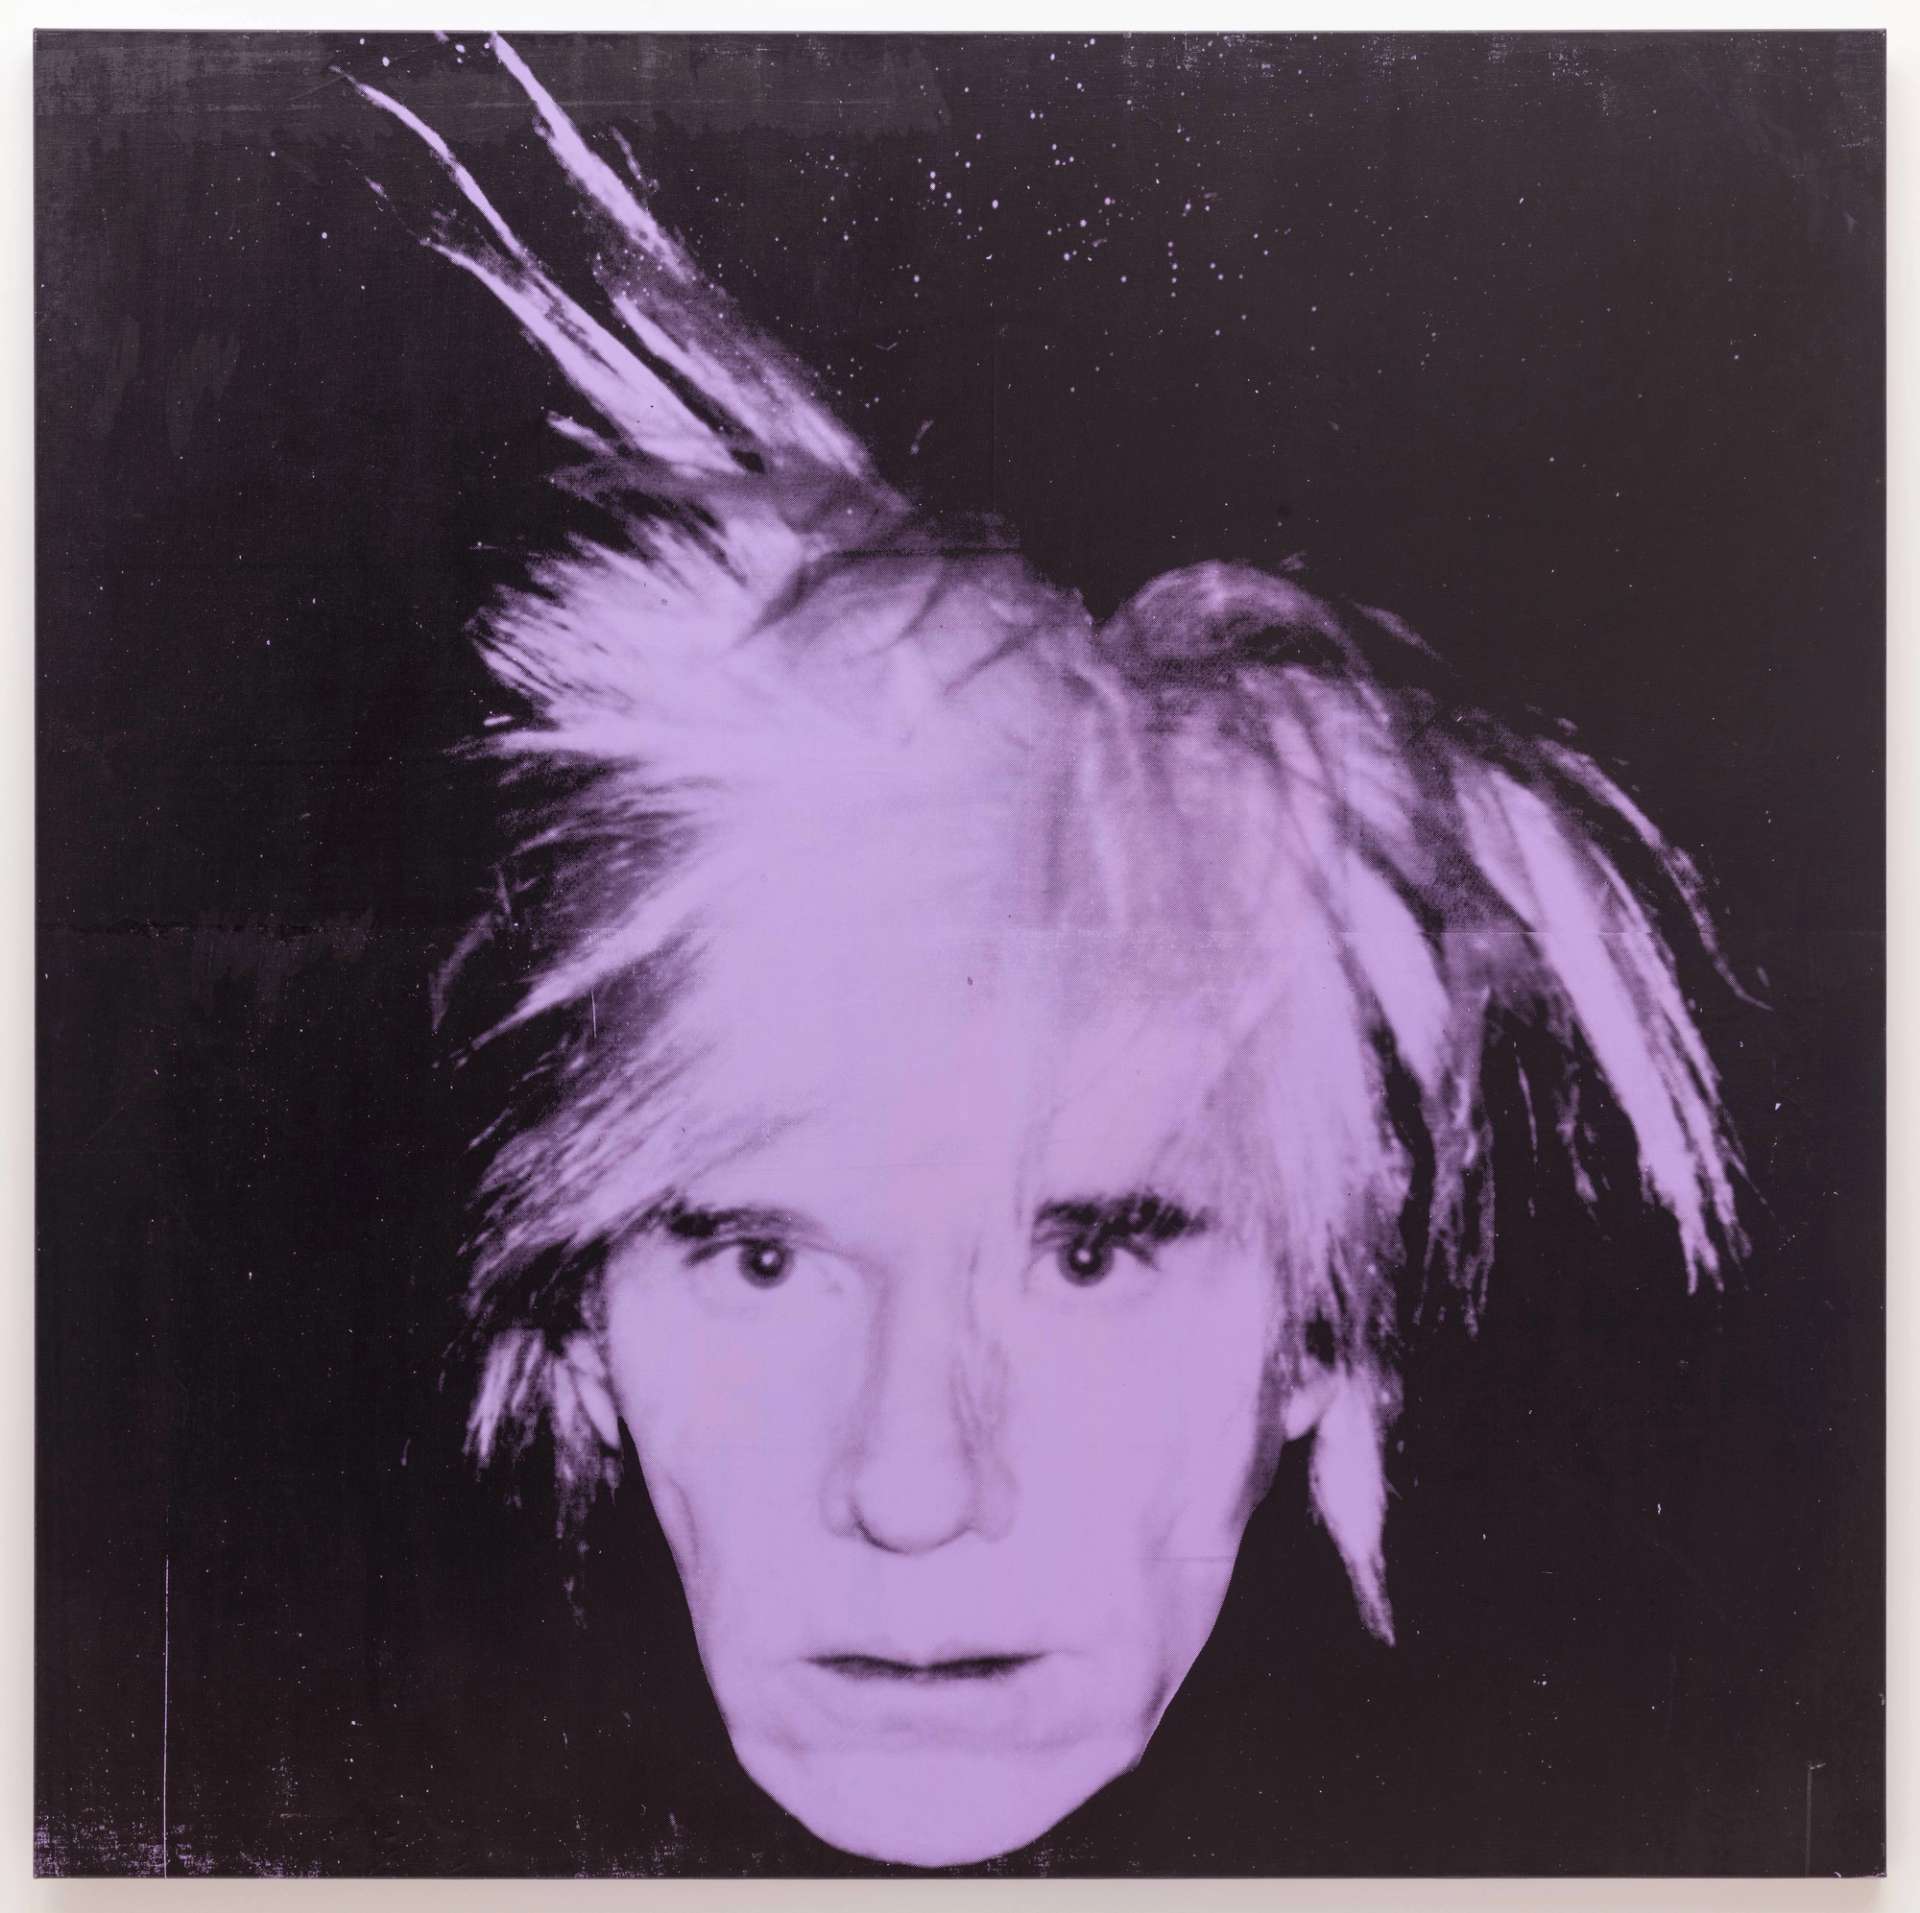  Self-Portrait, 1986 by Andy Warhol - MyArtBroker